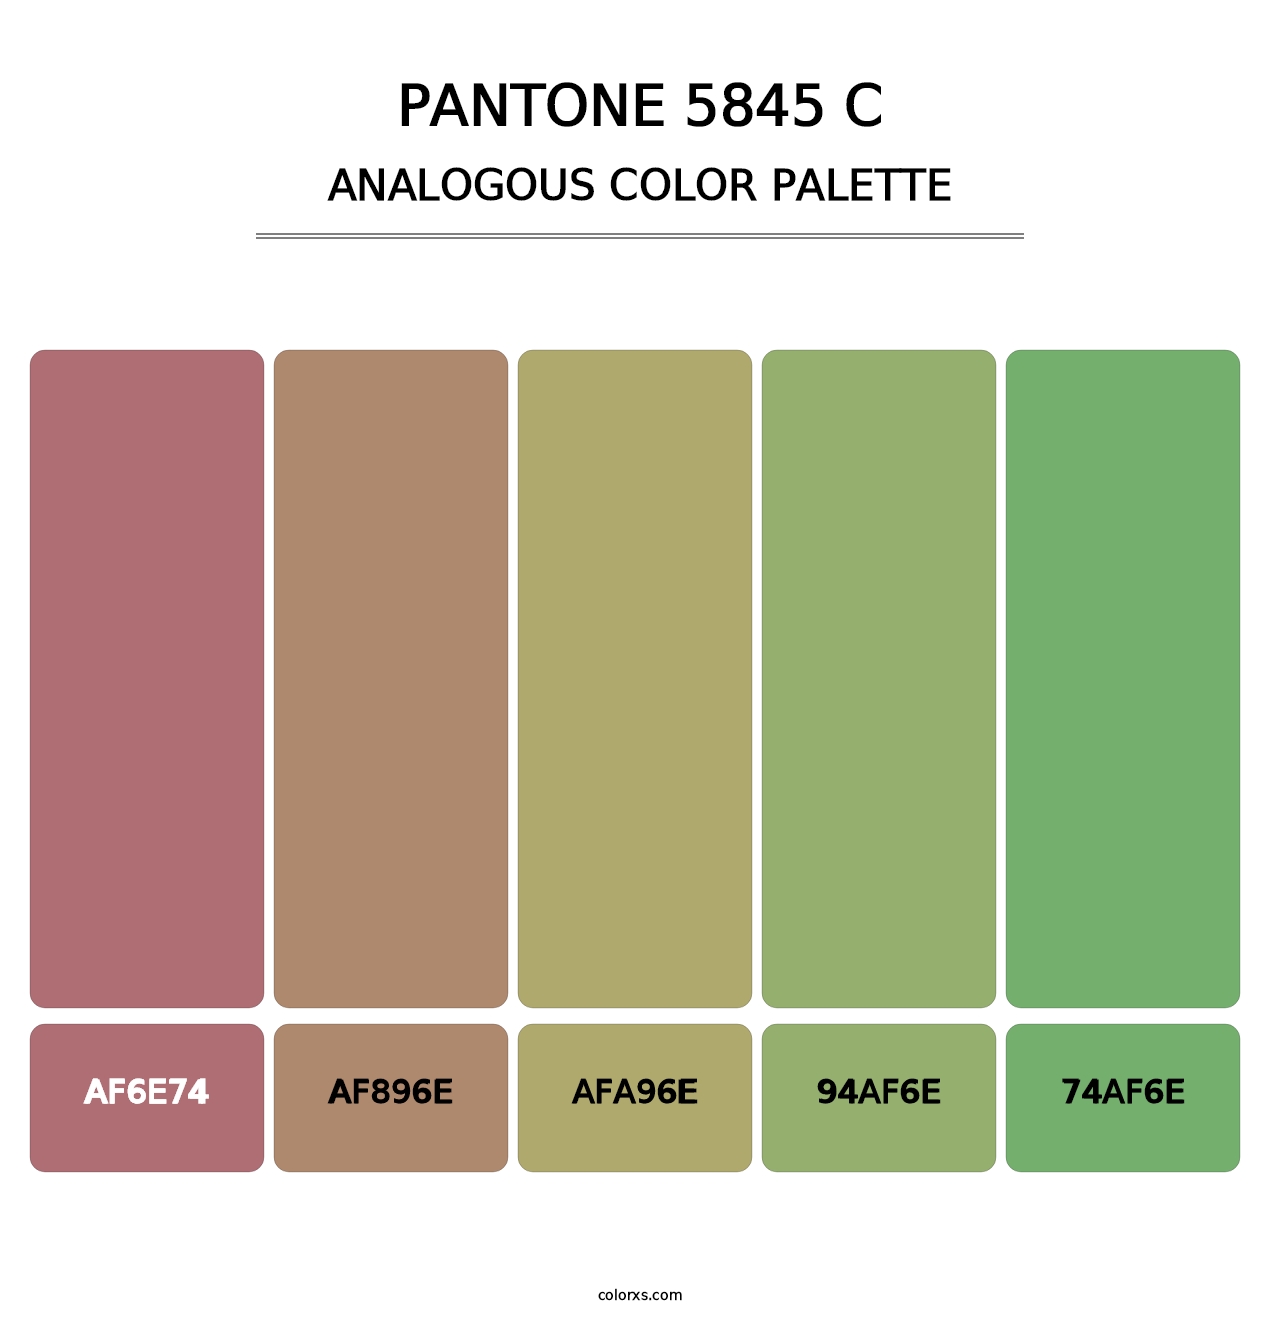 PANTONE 5845 C - Analogous Color Palette